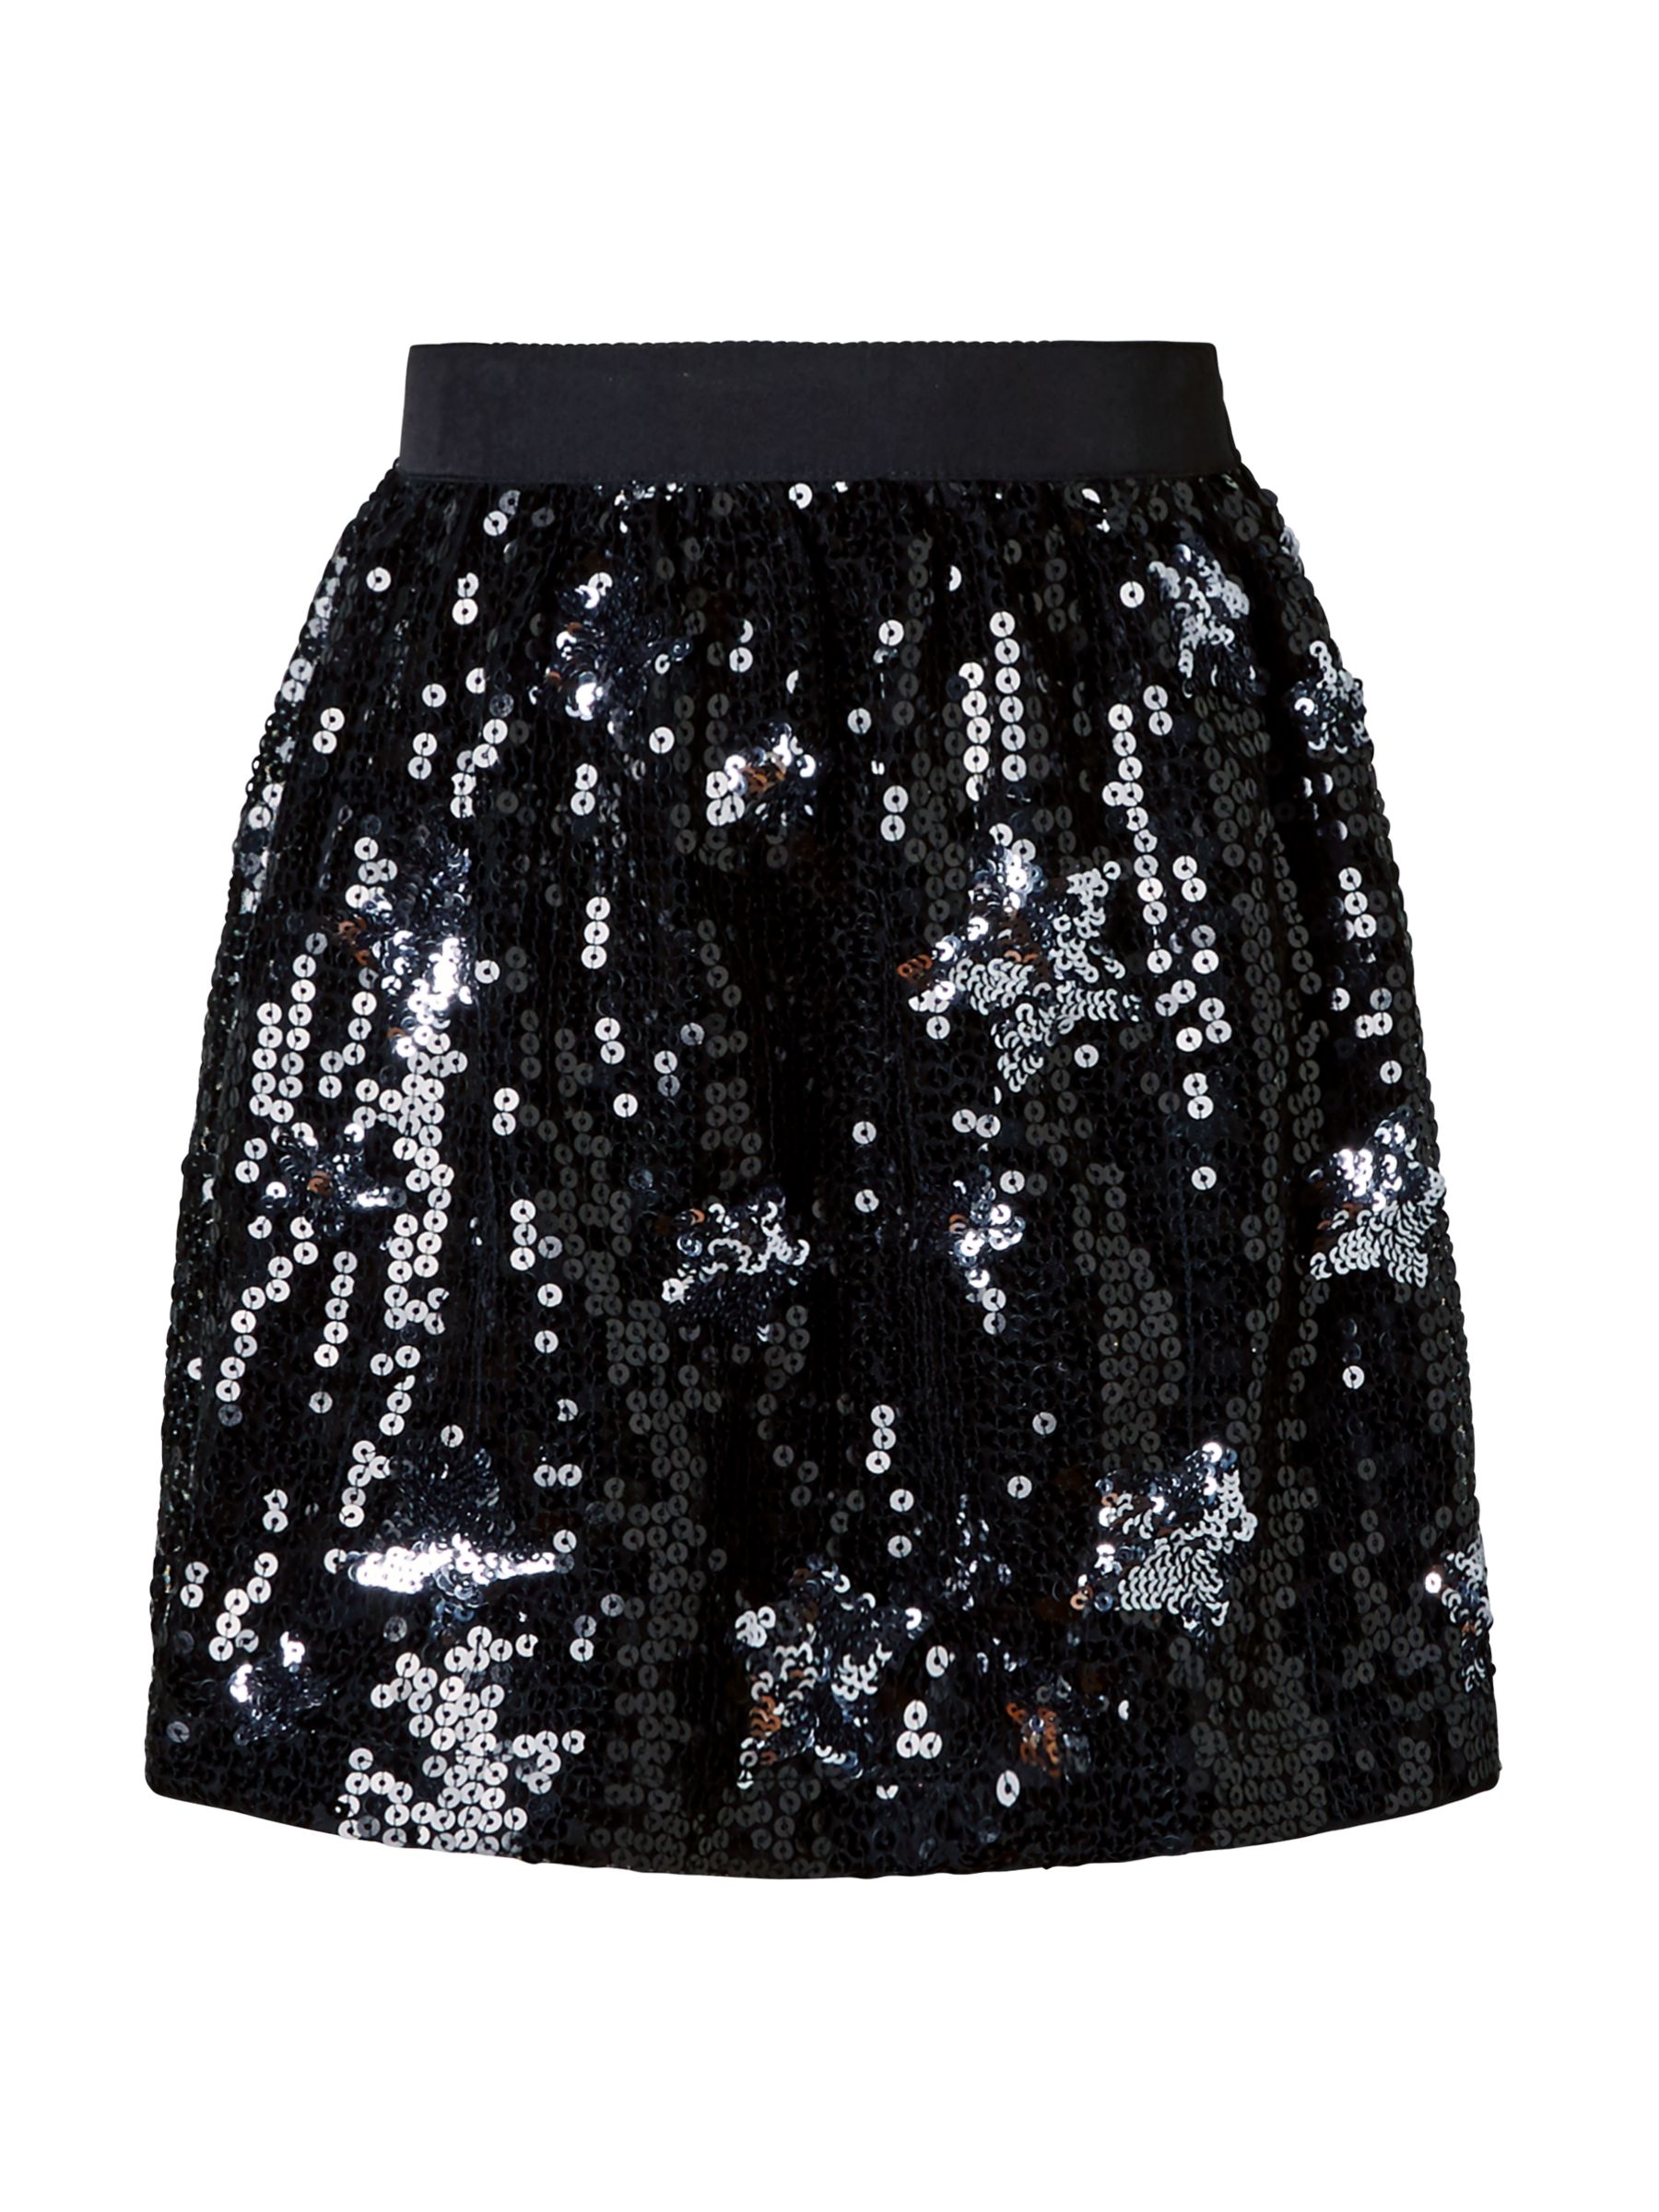 John Lewis & Partners Girls' Star Sequin Skirt, Black